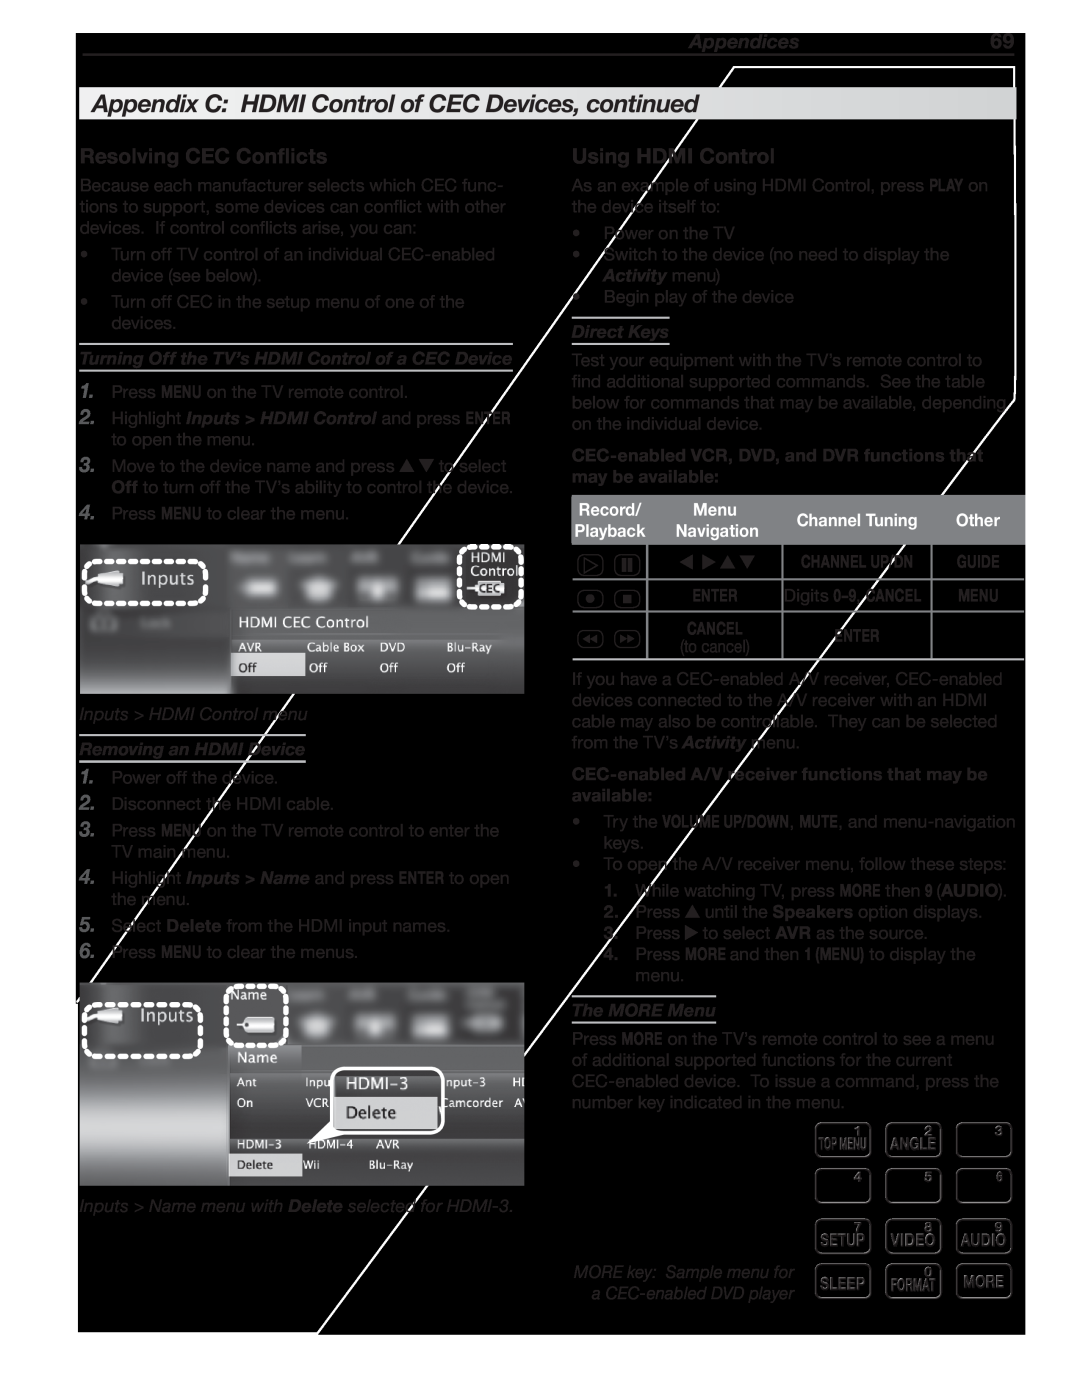 Mitsubishi Electronics 837, 737, C9 Resolving CEC Conflicts, Using HDMI Control, Appendices69, Inputs > HDMI Control menu 